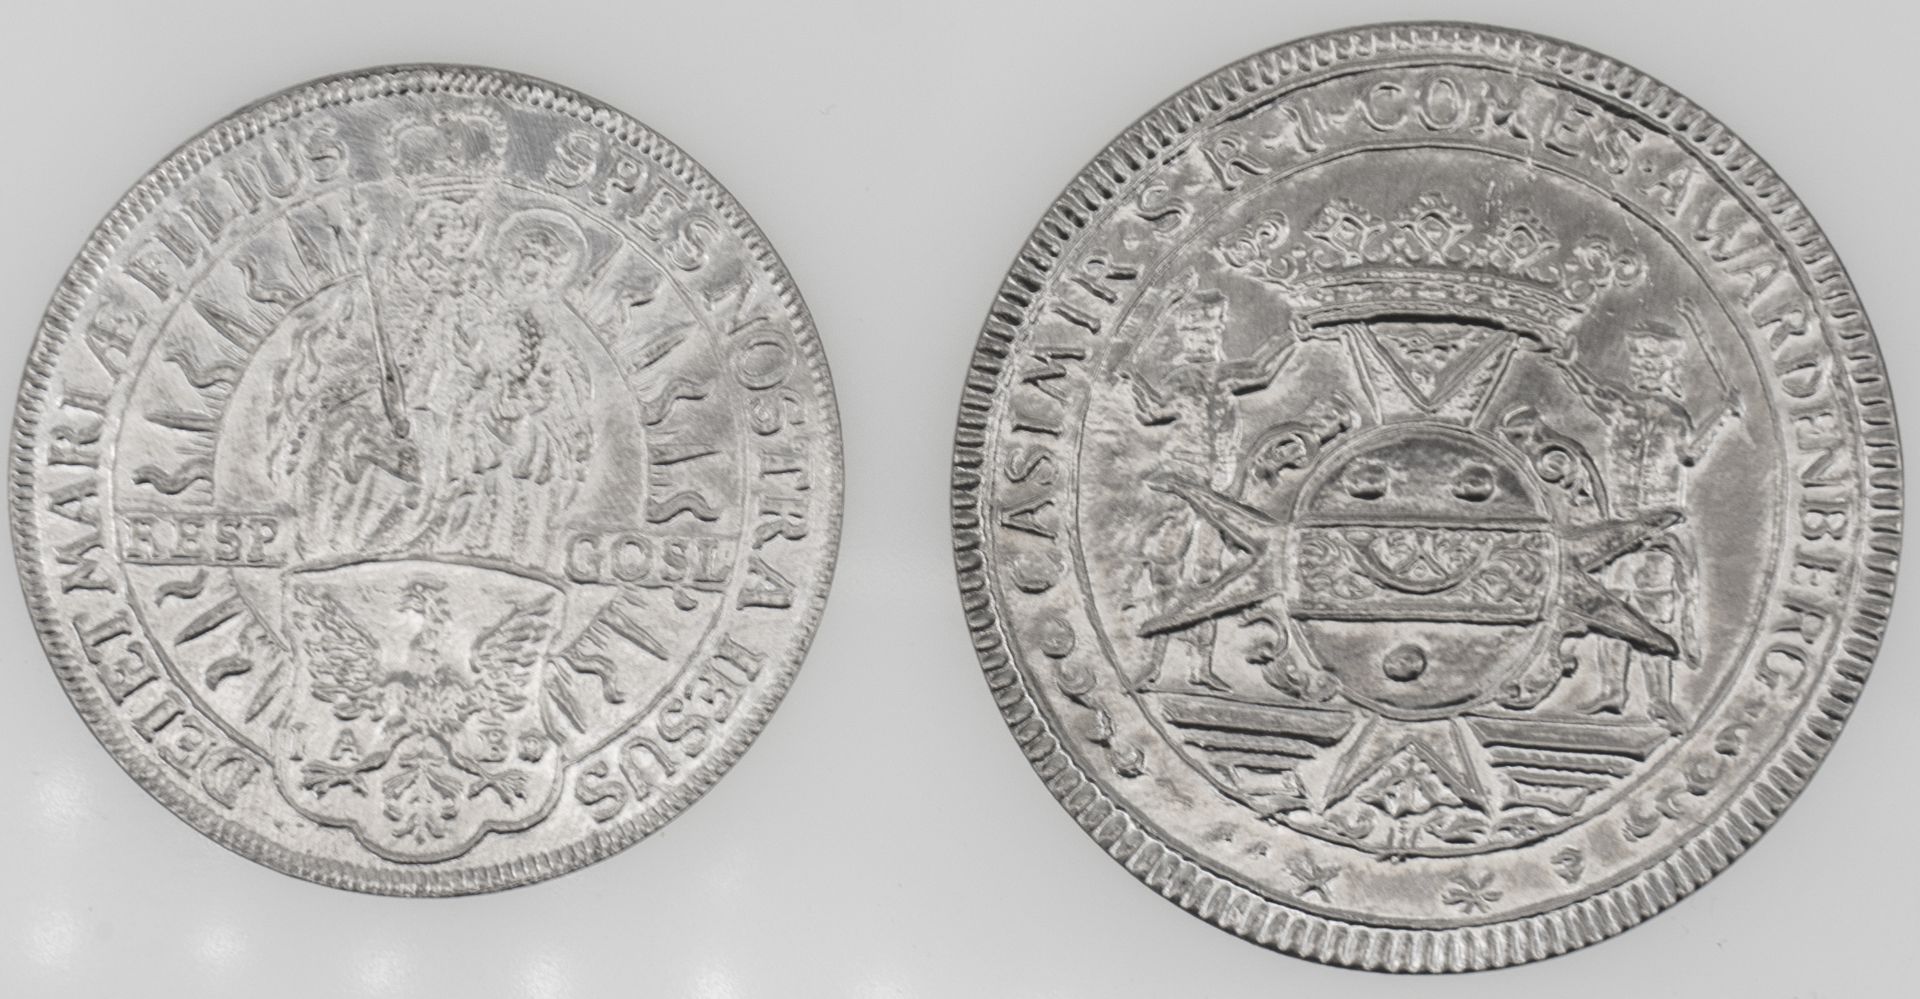 Marientaler von 1705 und Imsbach - Medaille von 1721. Beides Kopien.